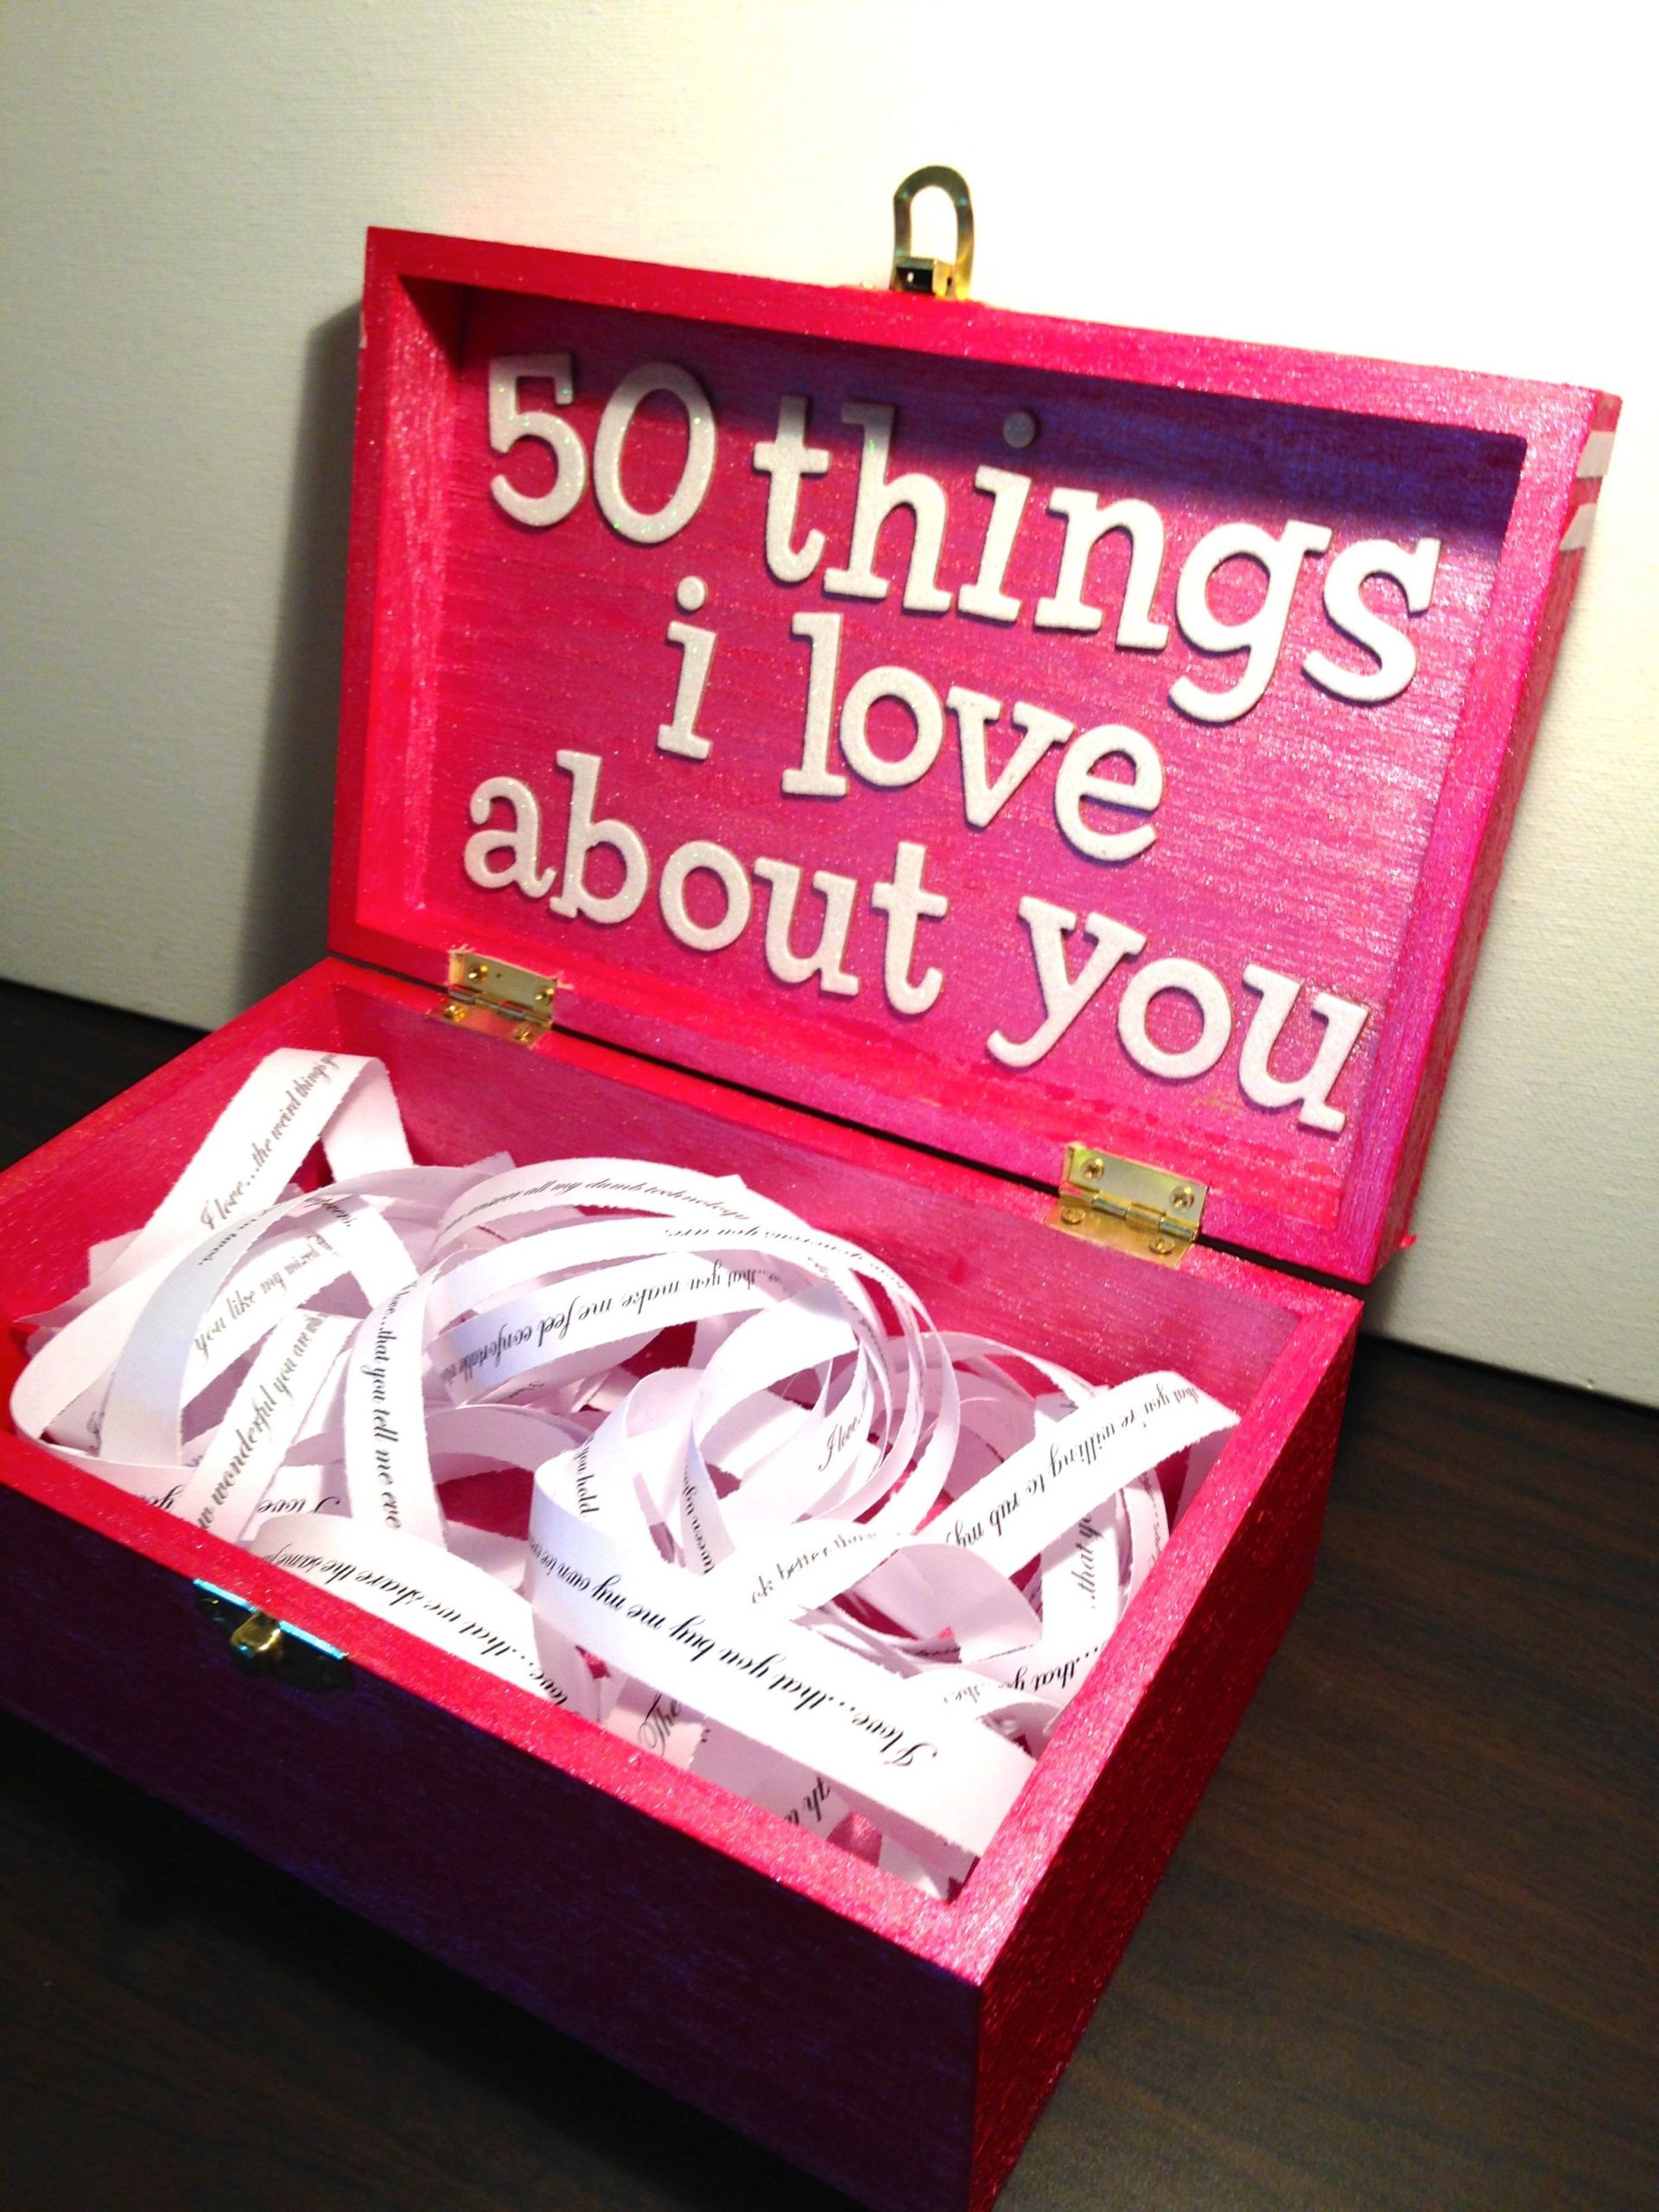 Best Gift Ideas For Your Girlfriend
 Boyfriend Girlfriend t ideas for birthday valentine